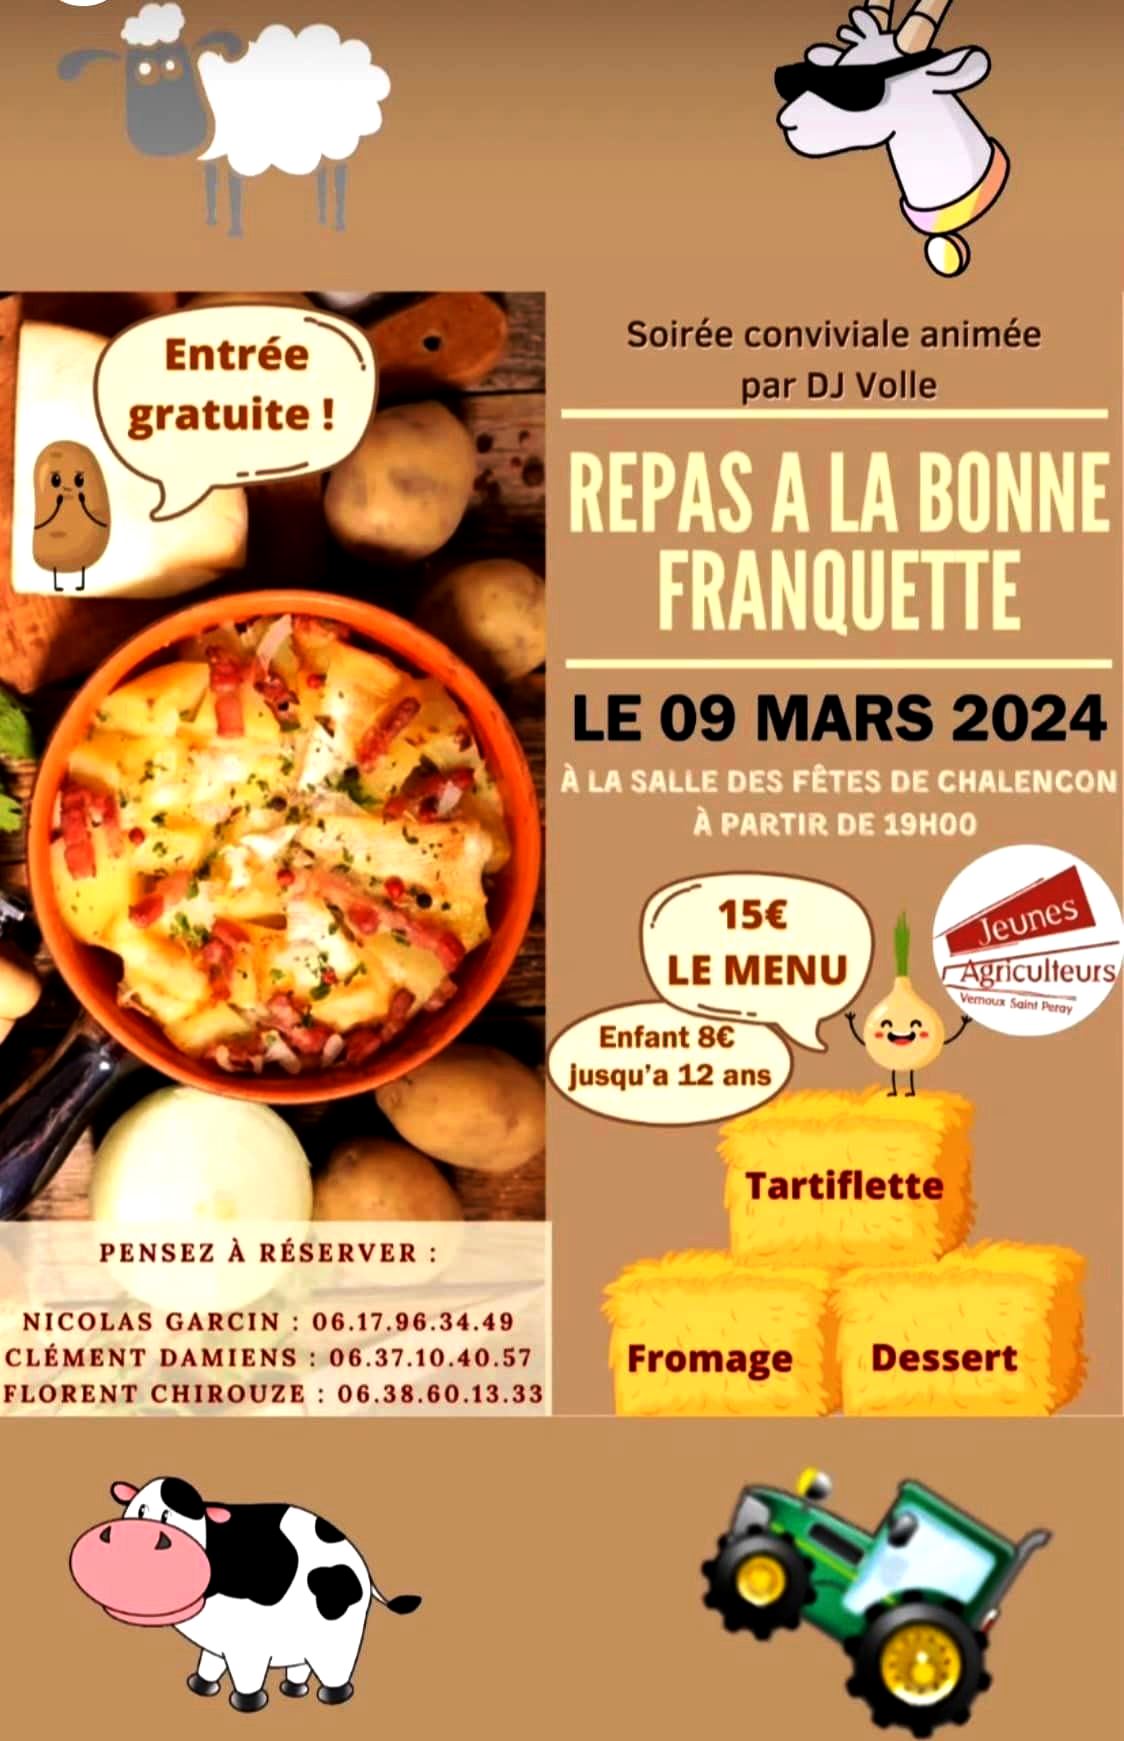 Events…Put it in your diary : Soirée conviviale À la bonne franquette : repas (tartiflette) animé par DJ Volle